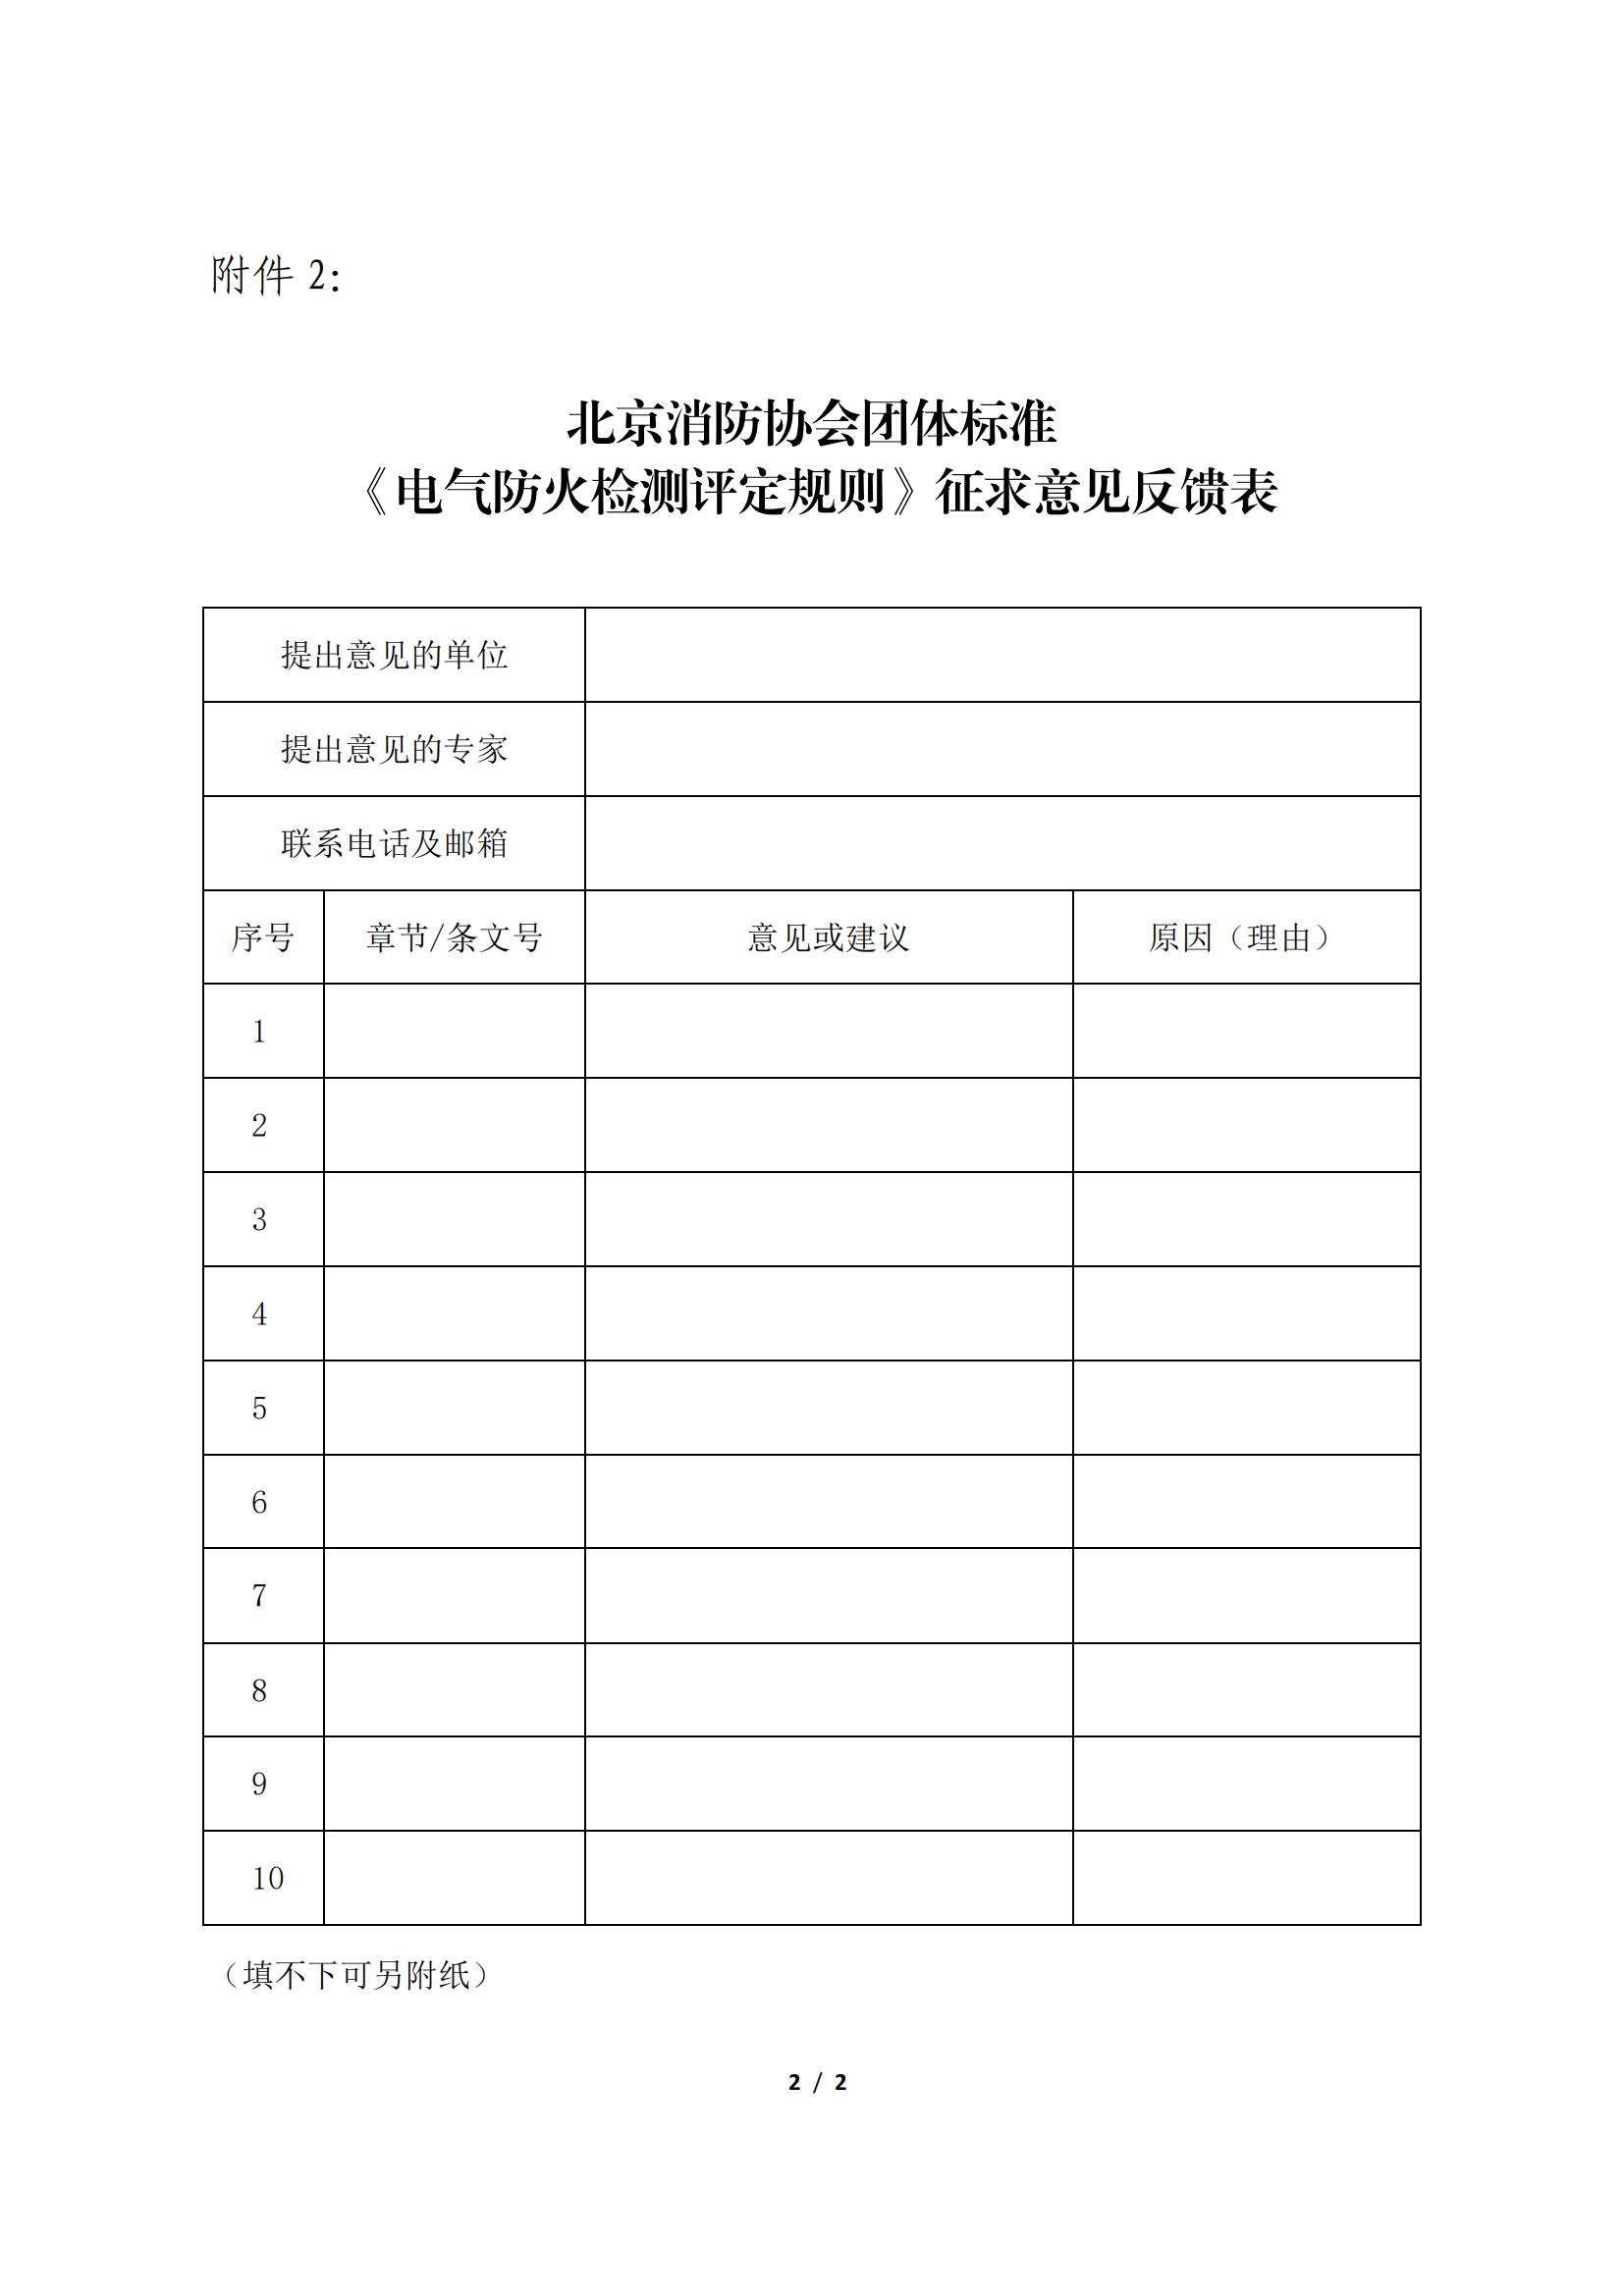 北京消防协会关于征求团体标准 《电气防火检测评定规则》意见的公告